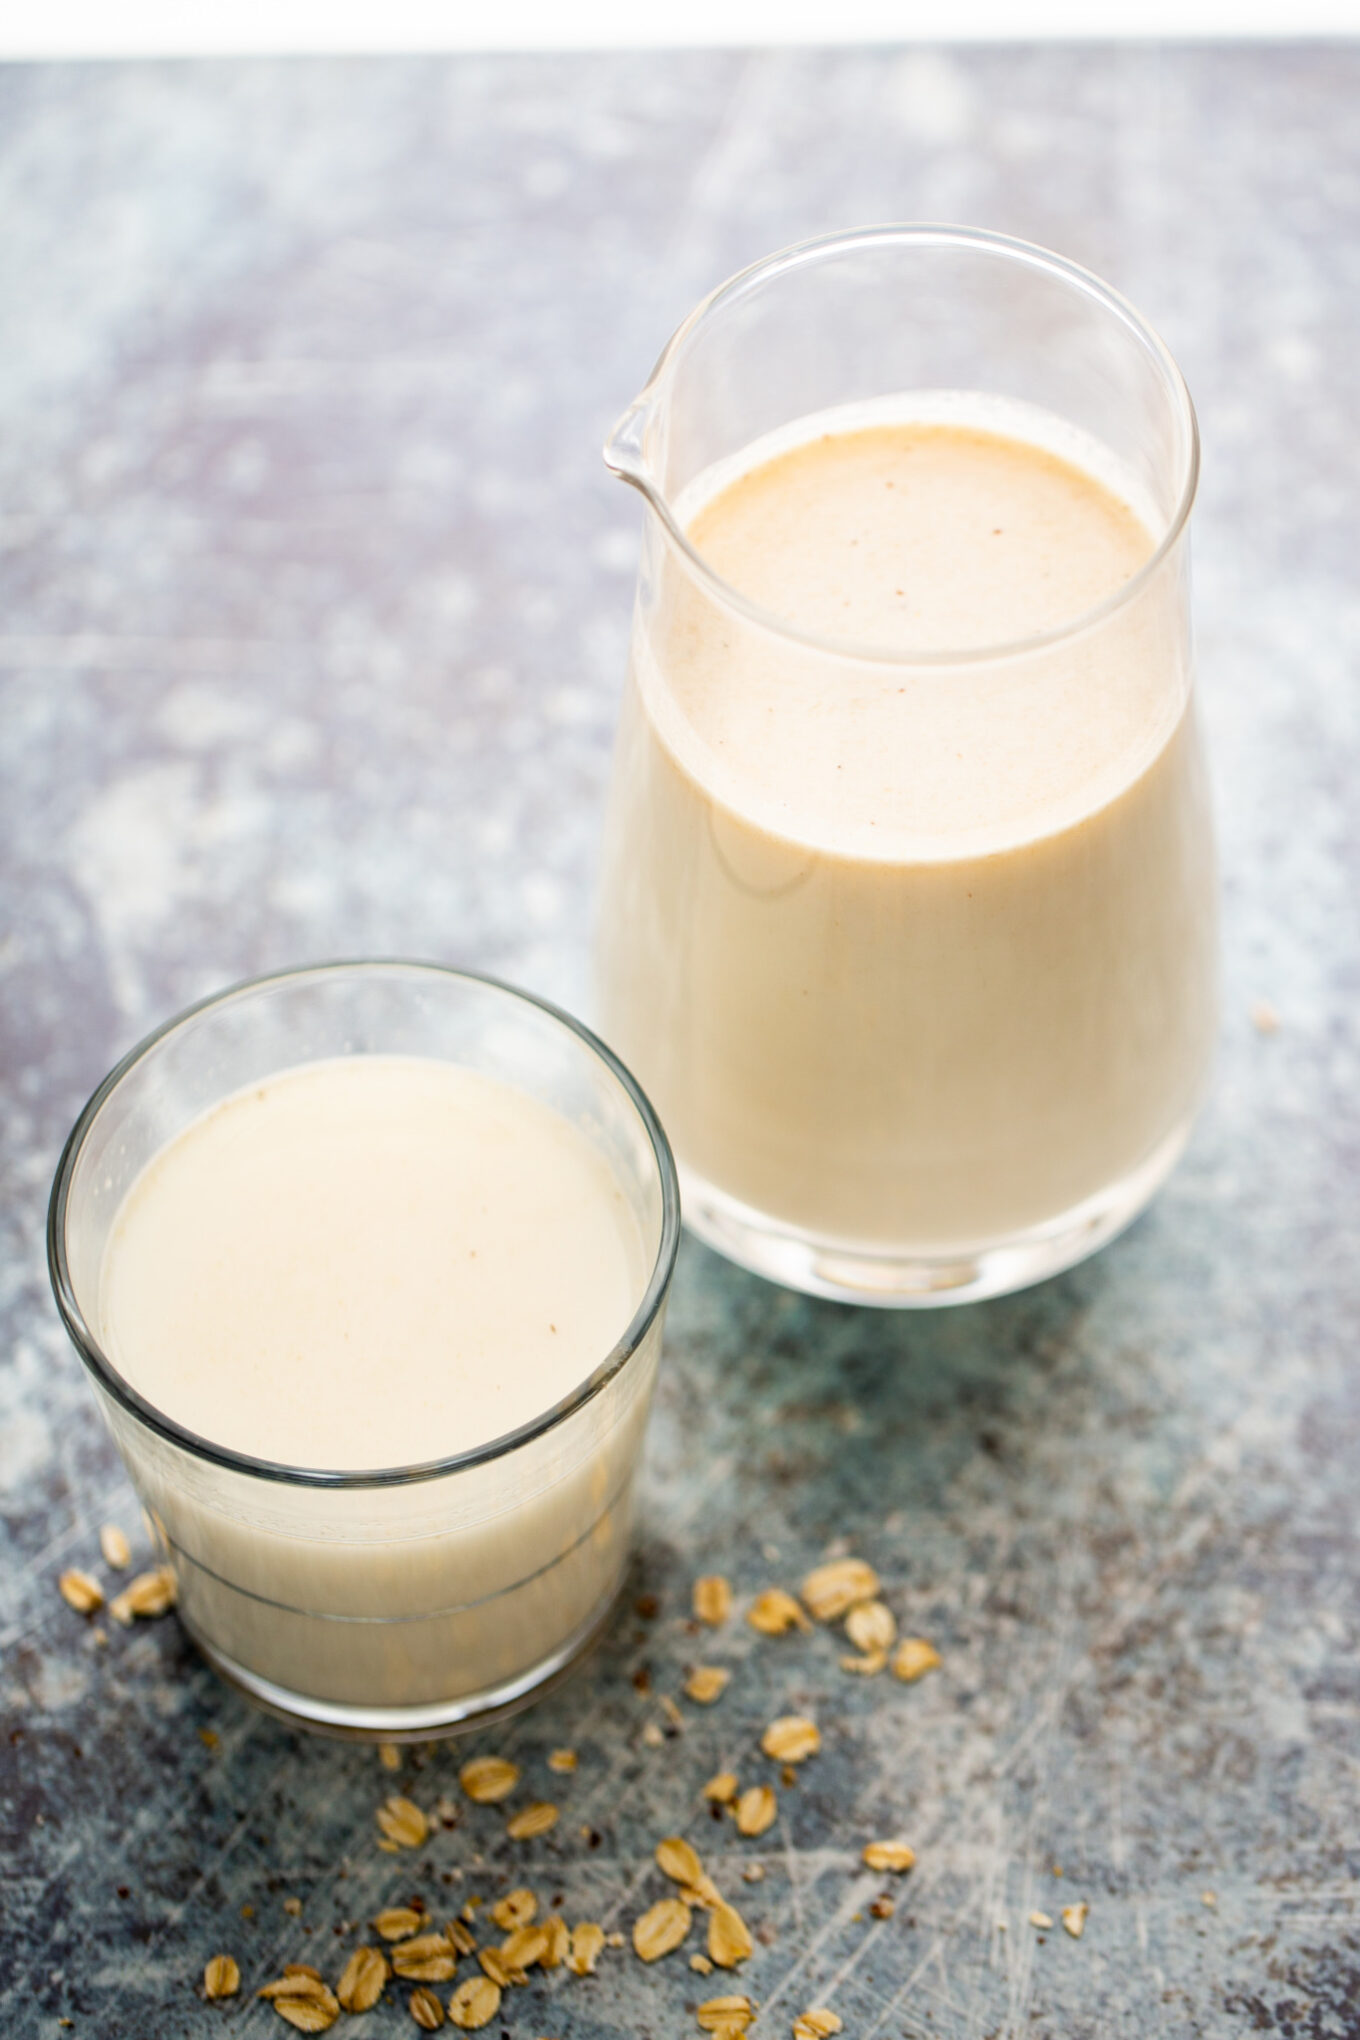 Cómo preparar leche de avena: receta y beneficios - Mejor con Salud